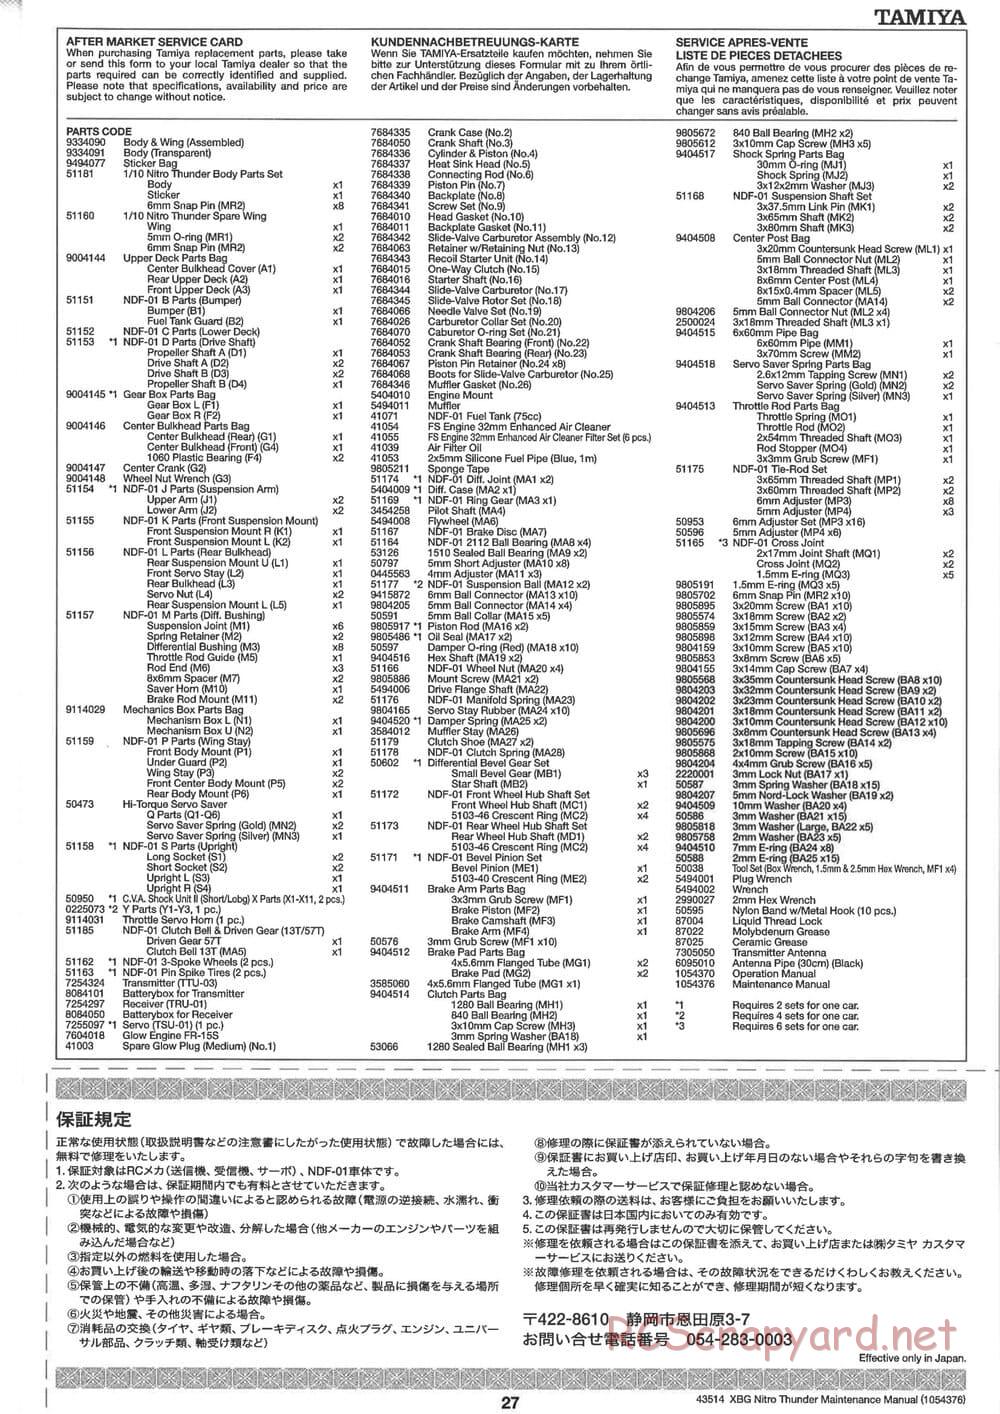 Tamiya - Nitro Thunder - NDF-01 Chassis - Manual - Page 27